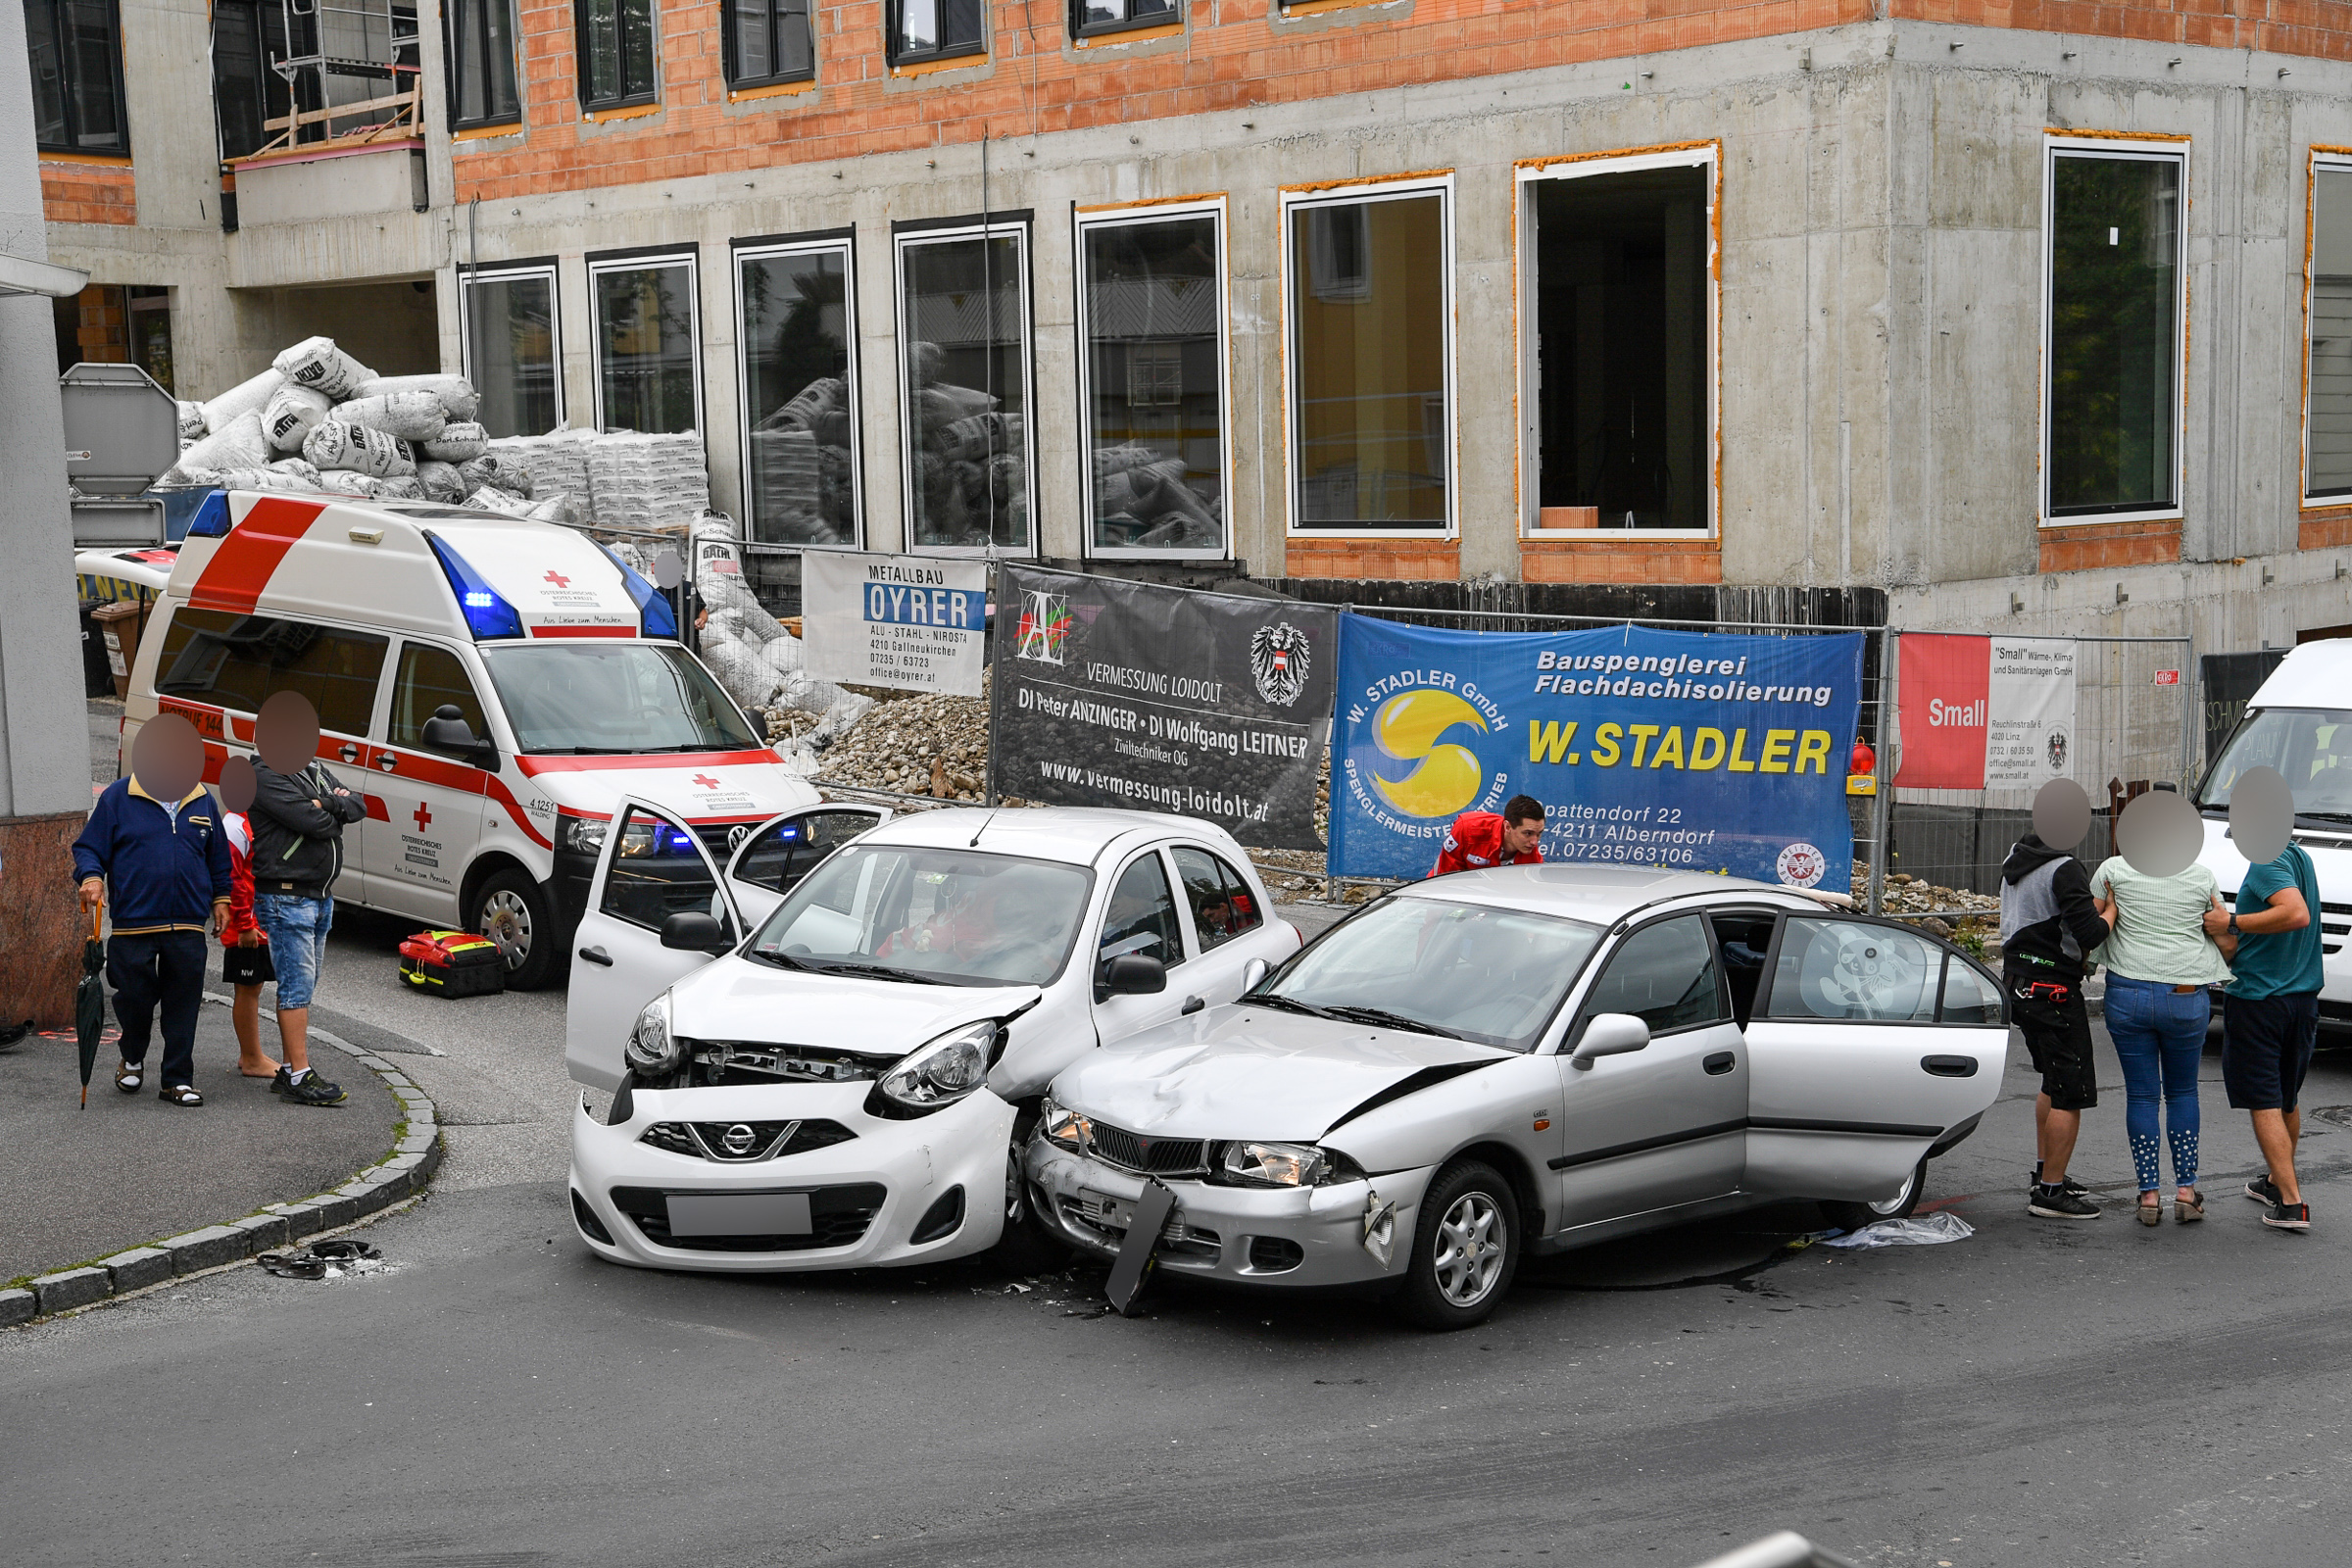 12.07.2019 - EINSATZ: Verkehrsunfall in Gallneukirchen